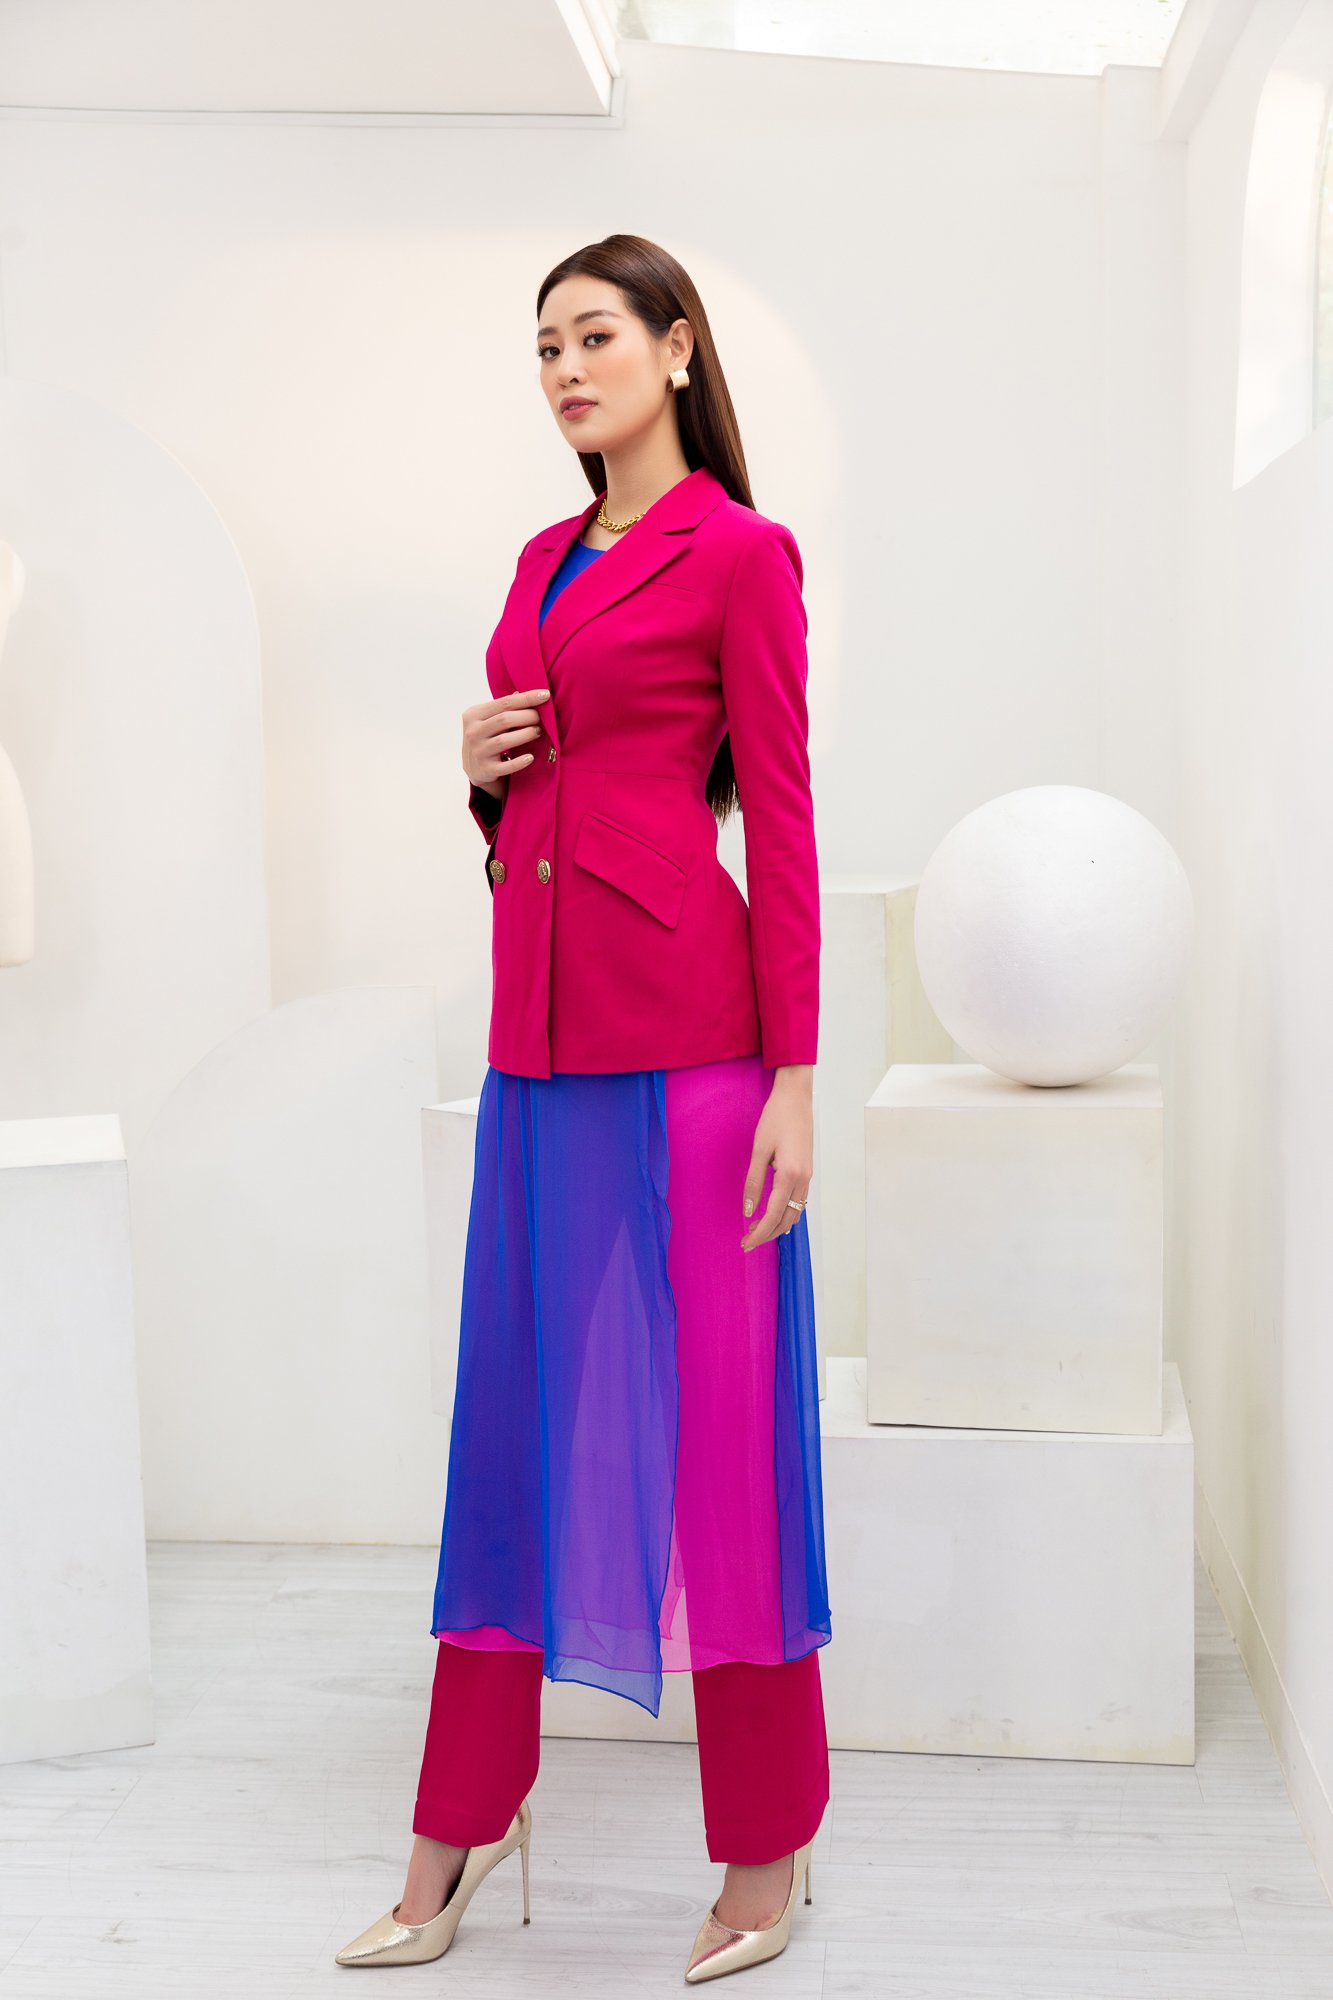 Phong cách thanh lịch được Khánh Vân truyền tải qua bộ vest hồng và chiếc váy lấy cảm hứng từ áo dài